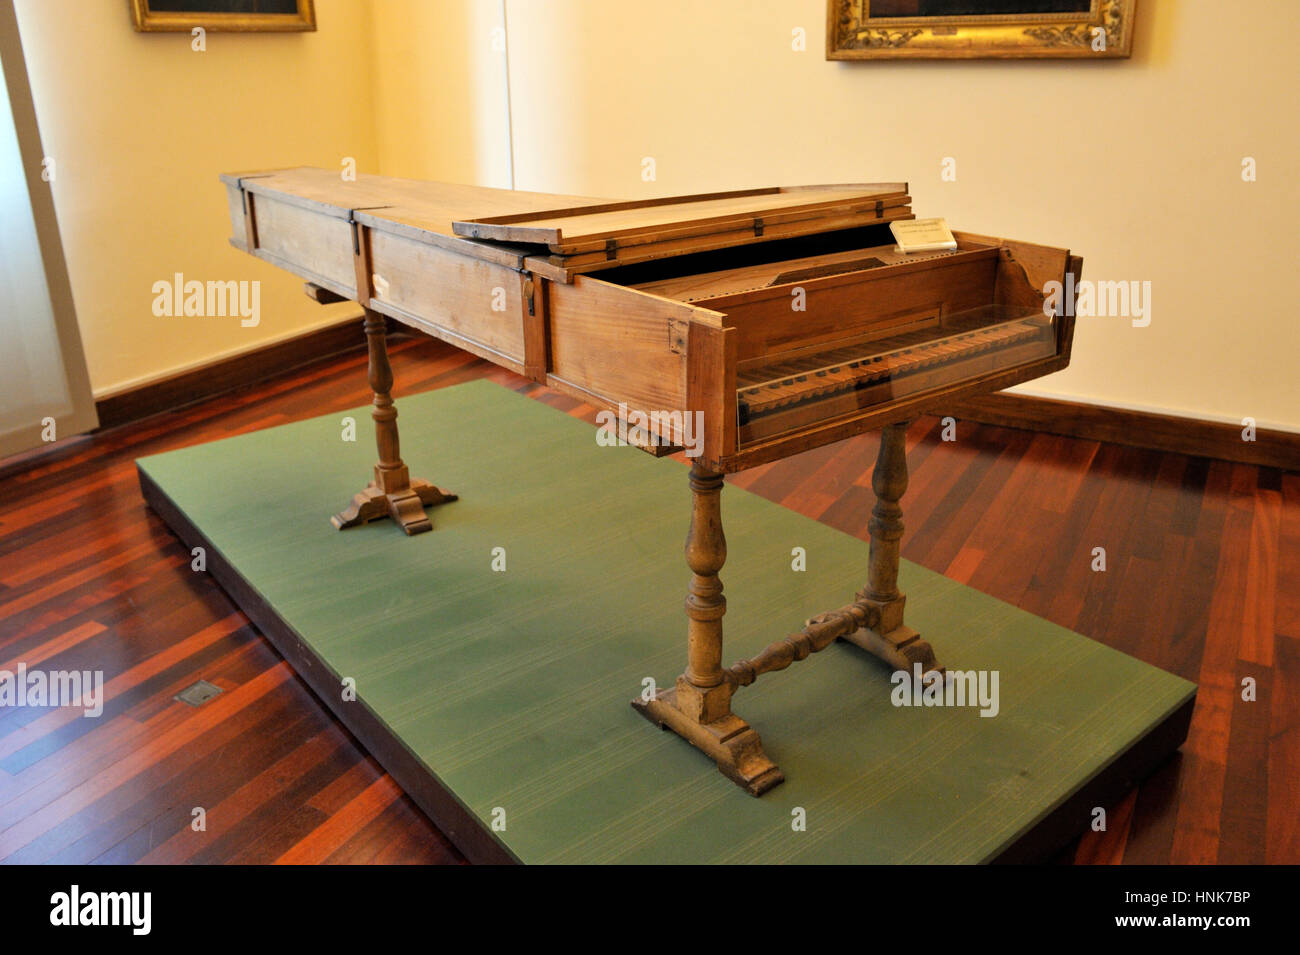 Italie, Rome, Musée national des instruments de musique, piano par Bartolomeo Cristofori (AD 1722), inventeur du pianoforte Banque D'Images